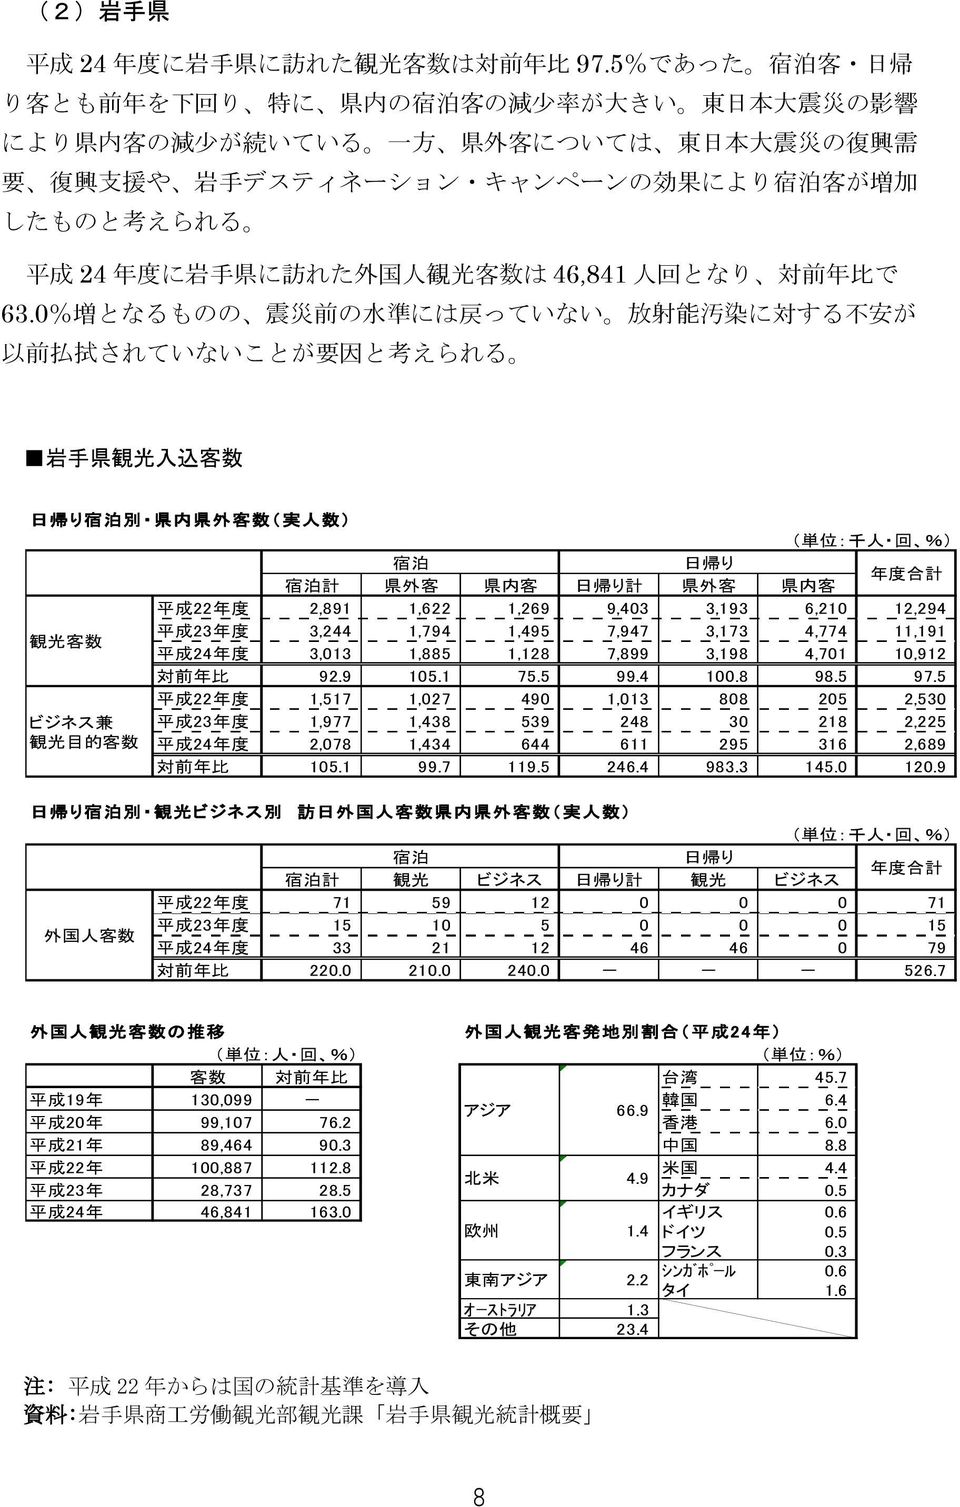 えられる 平 成 24 年 度 に 岩 手 県 に 訪 れた 外 国 人 観 光 客 数 は 46,841 人 回 となり 対 前 年 比 で 63.